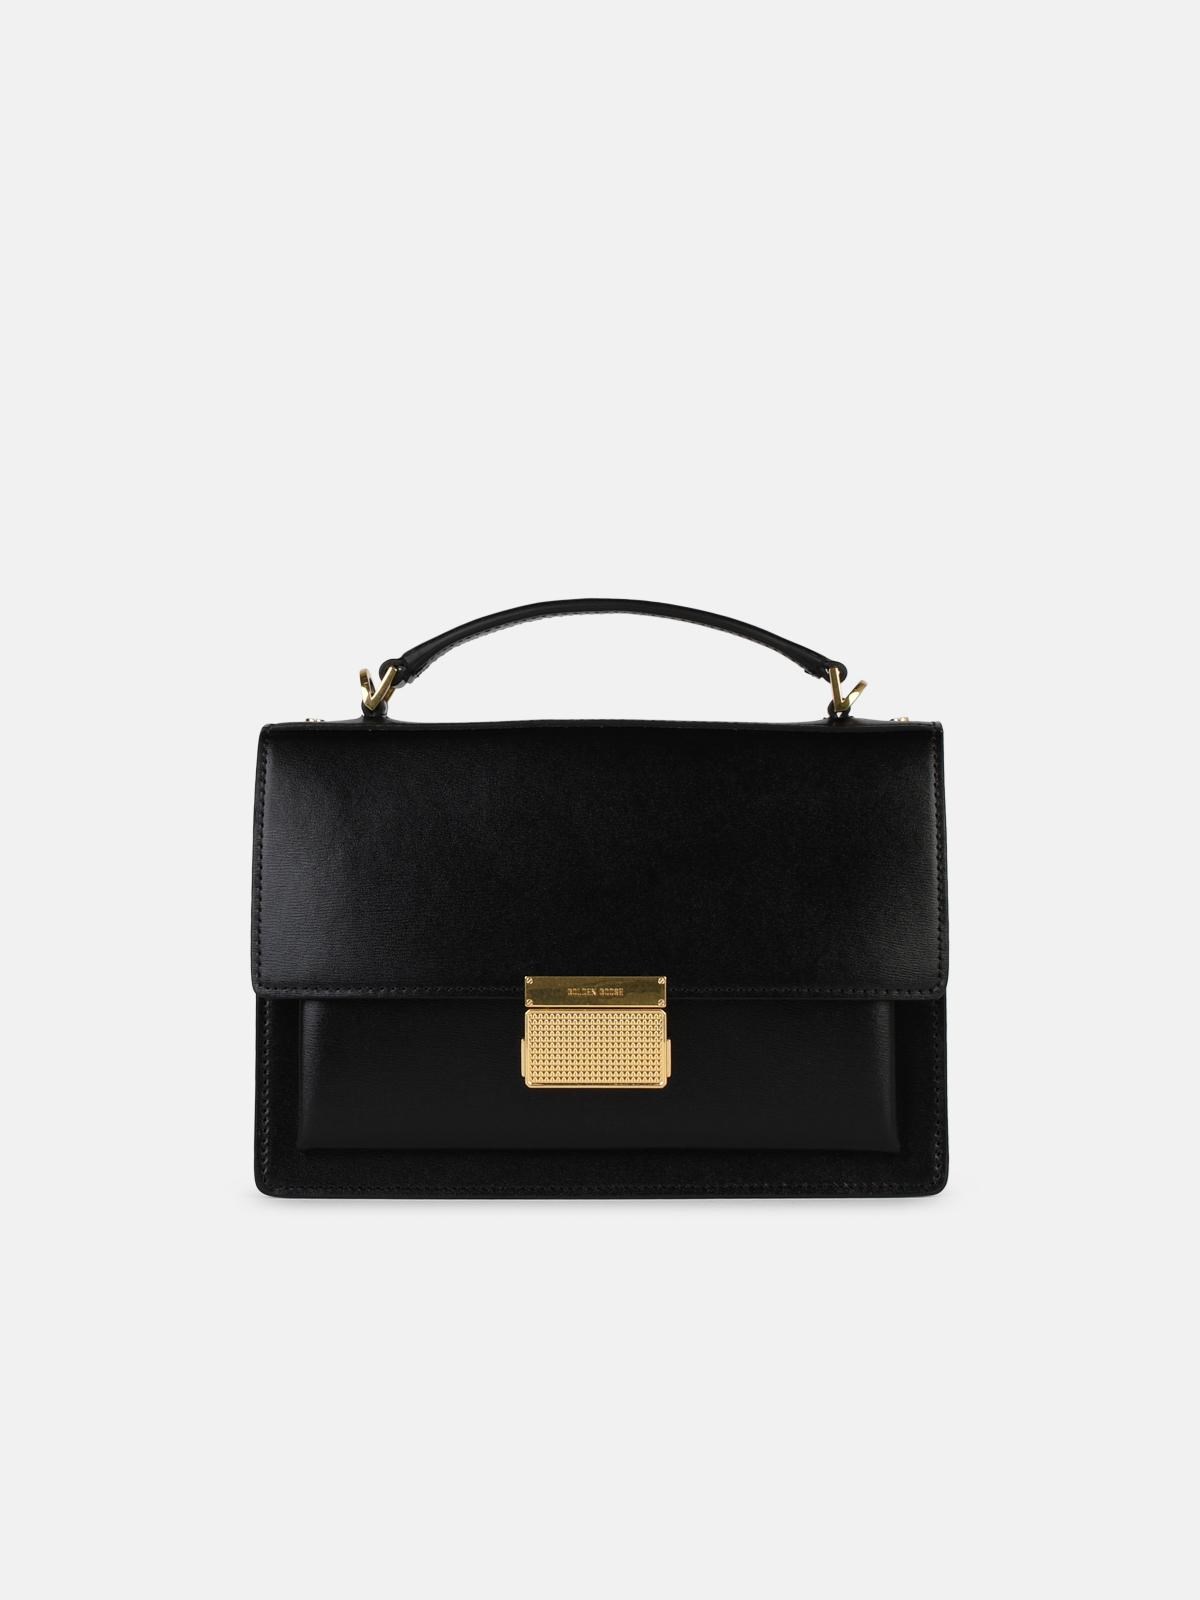 Golden Goose Venezia Bag In Black Palmellata Leather In Burgundy